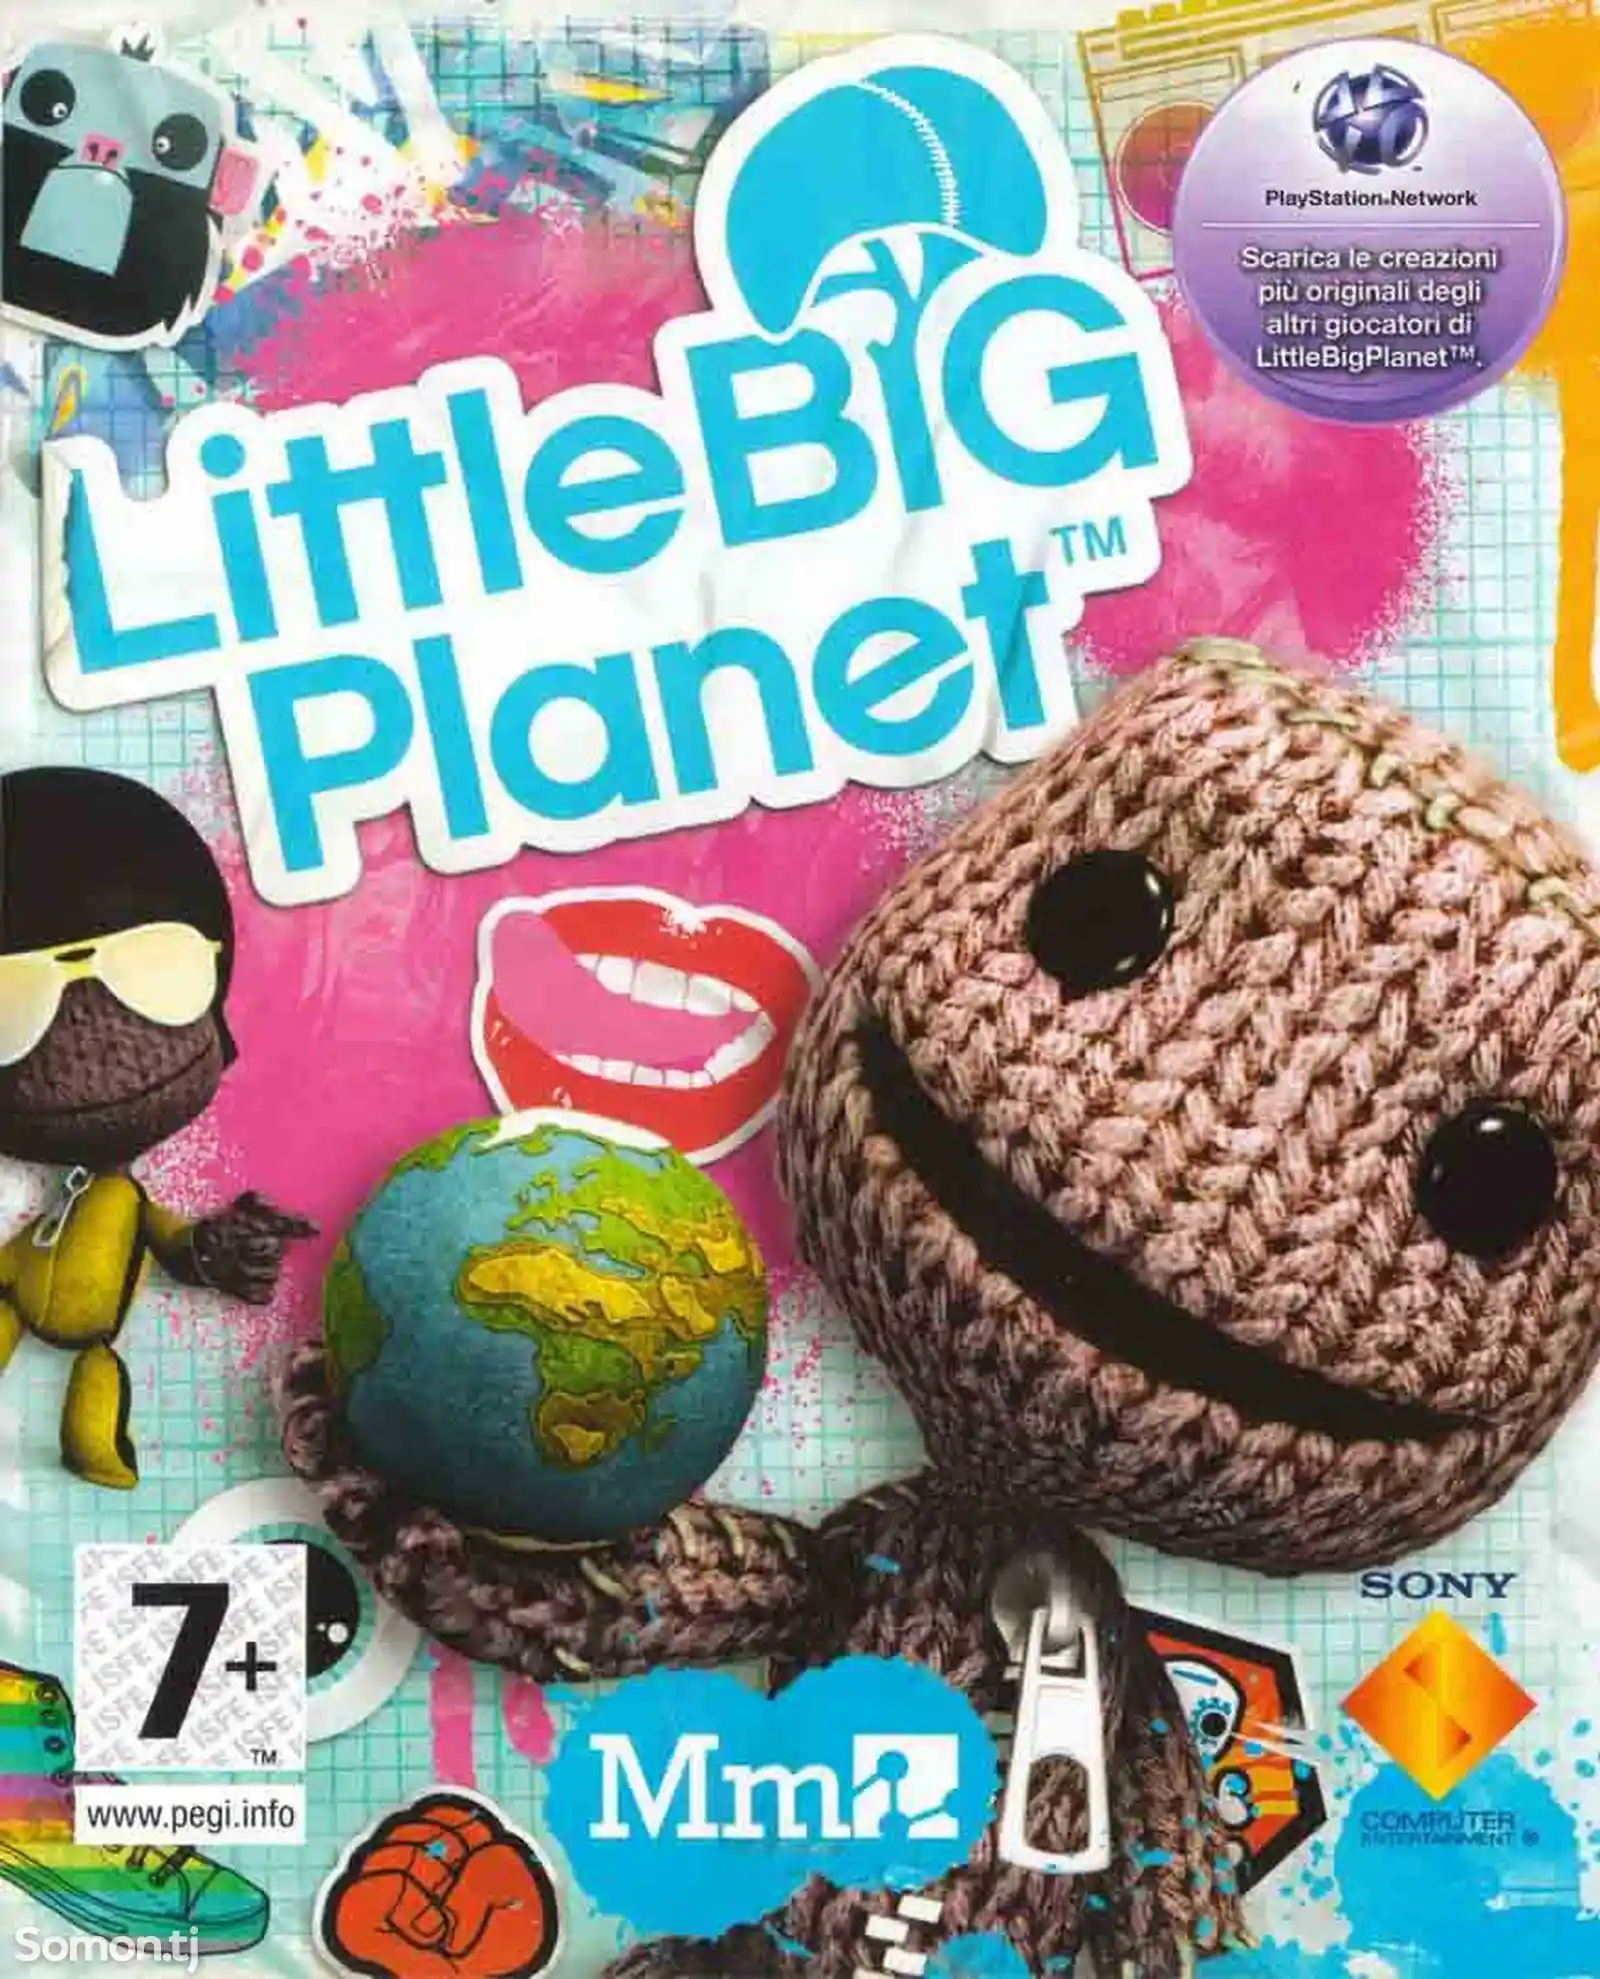 Игра Little Big Planet 1 на всех моделей Play Station-3